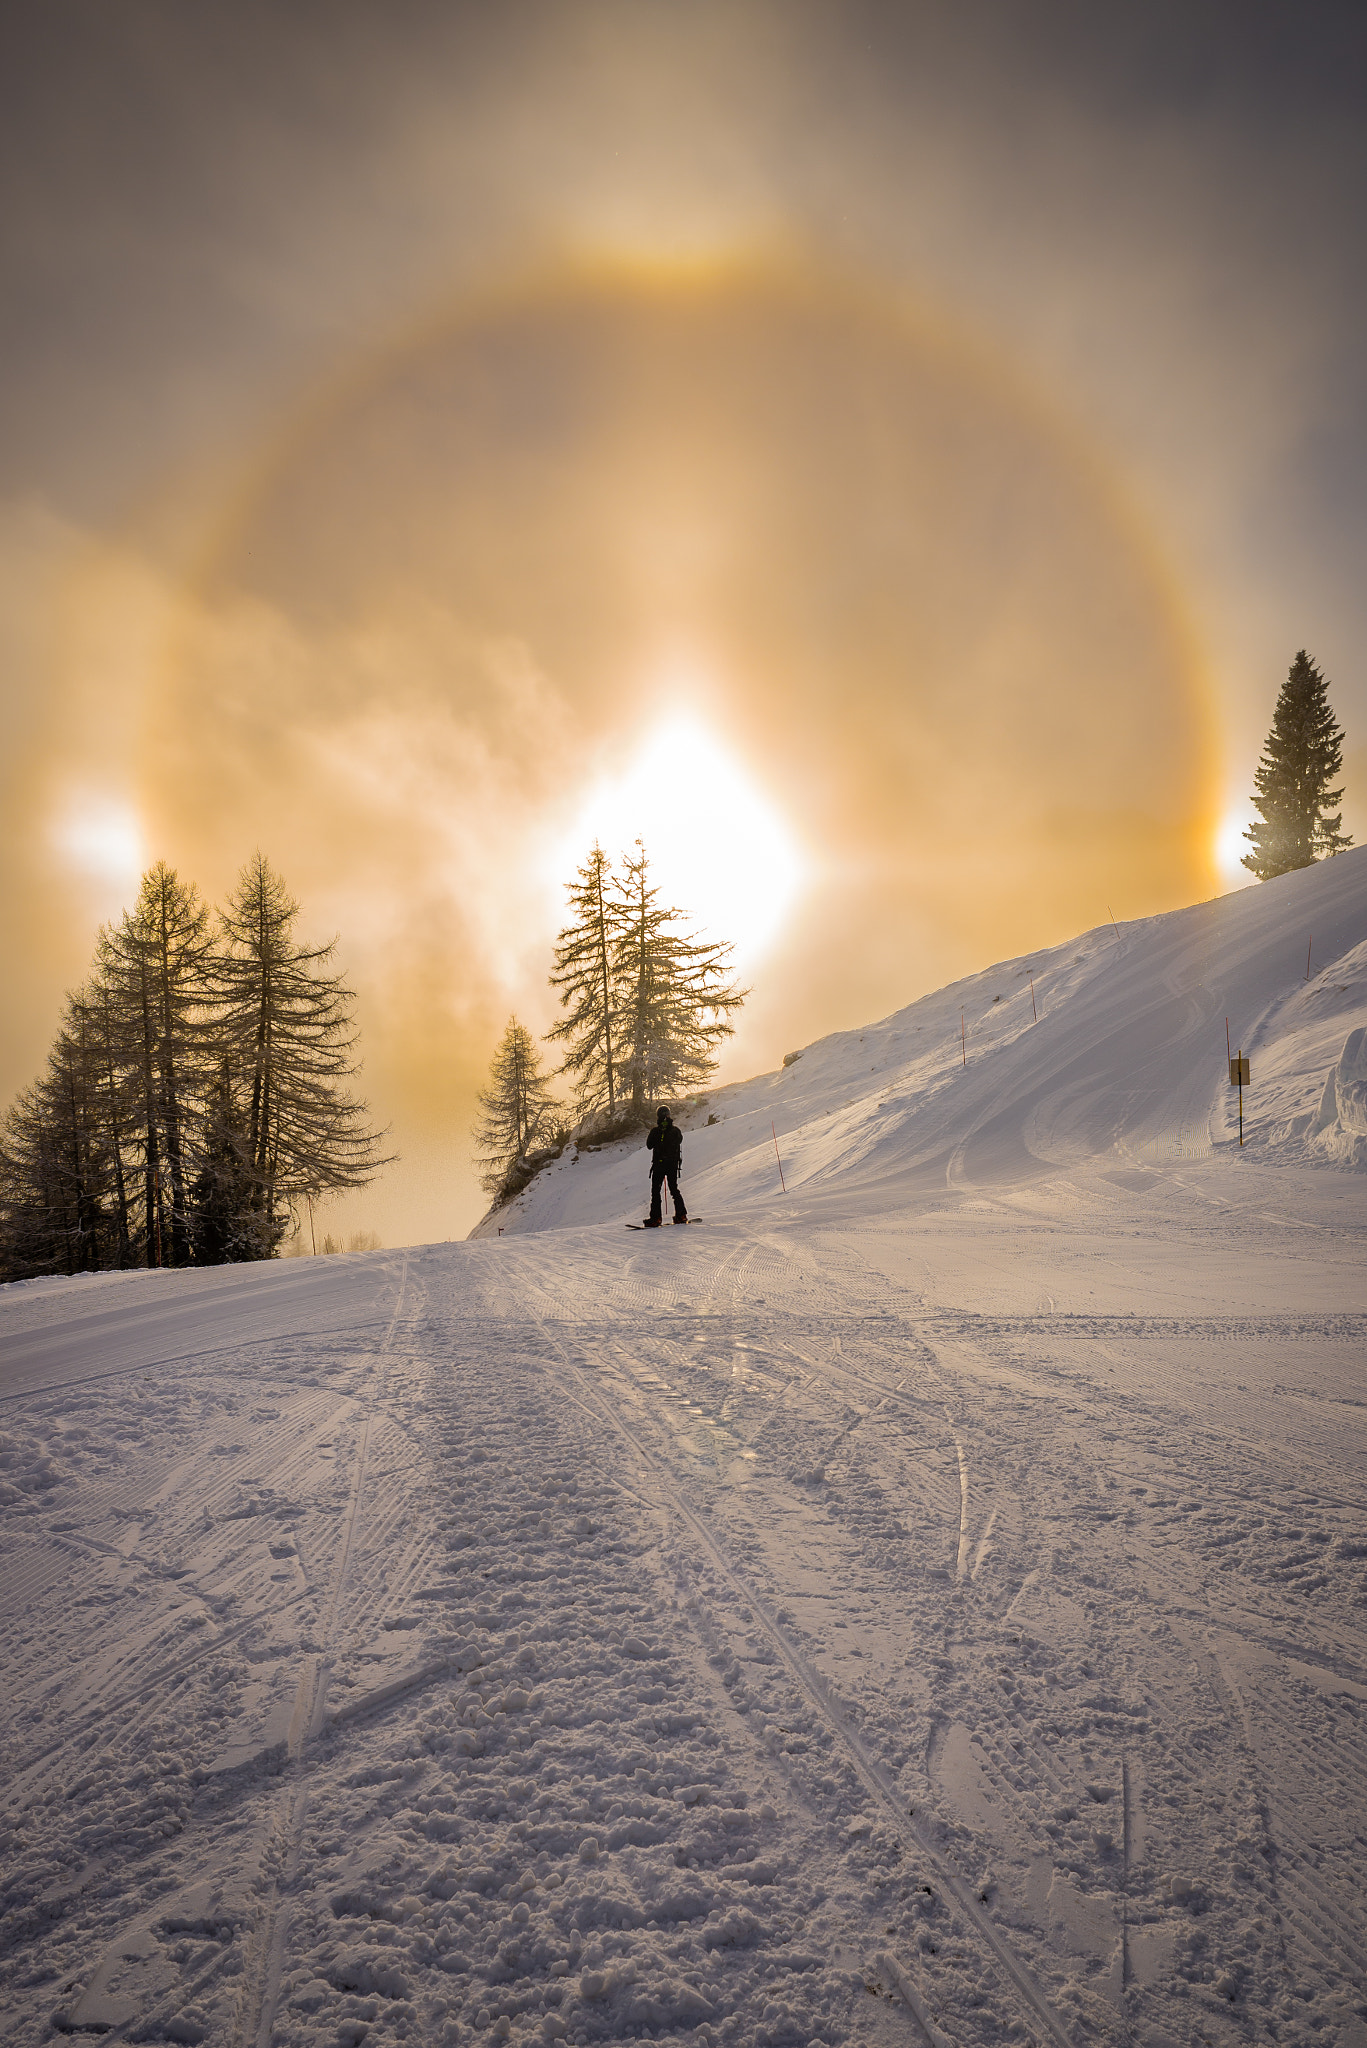 AF Nikkor 20mm f/2.8 sample photo. Sun dog on the ski slopes photography